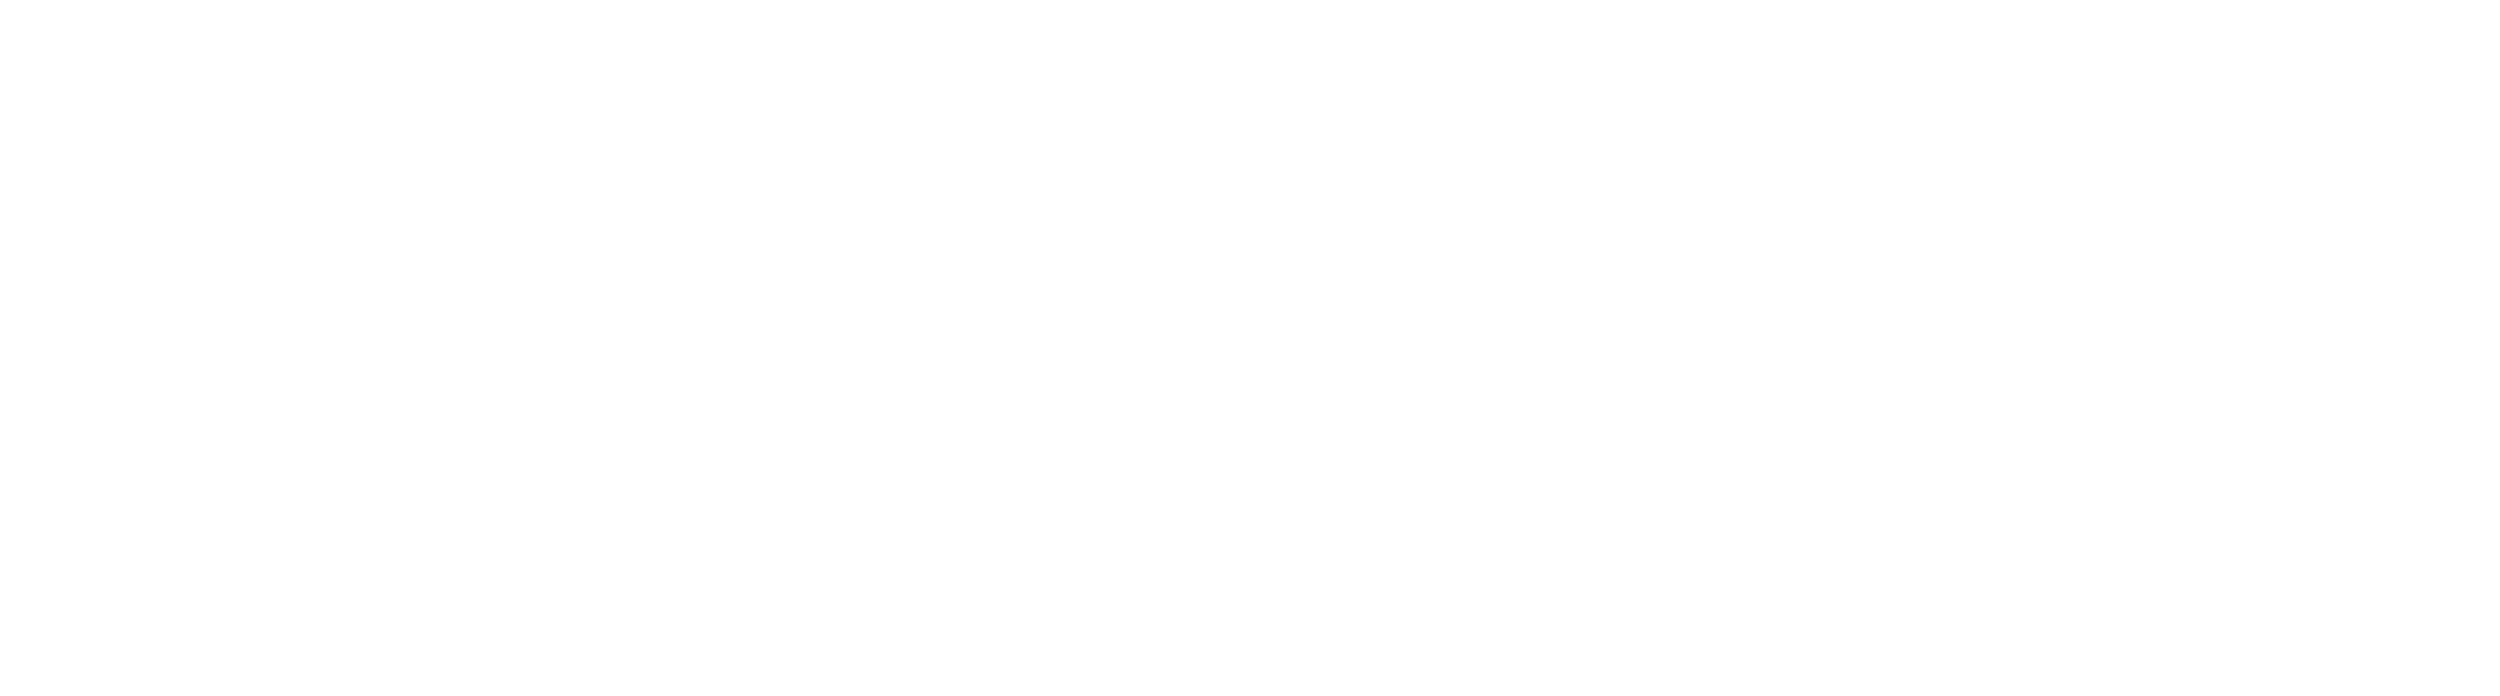 Acupuncture Center Decorah